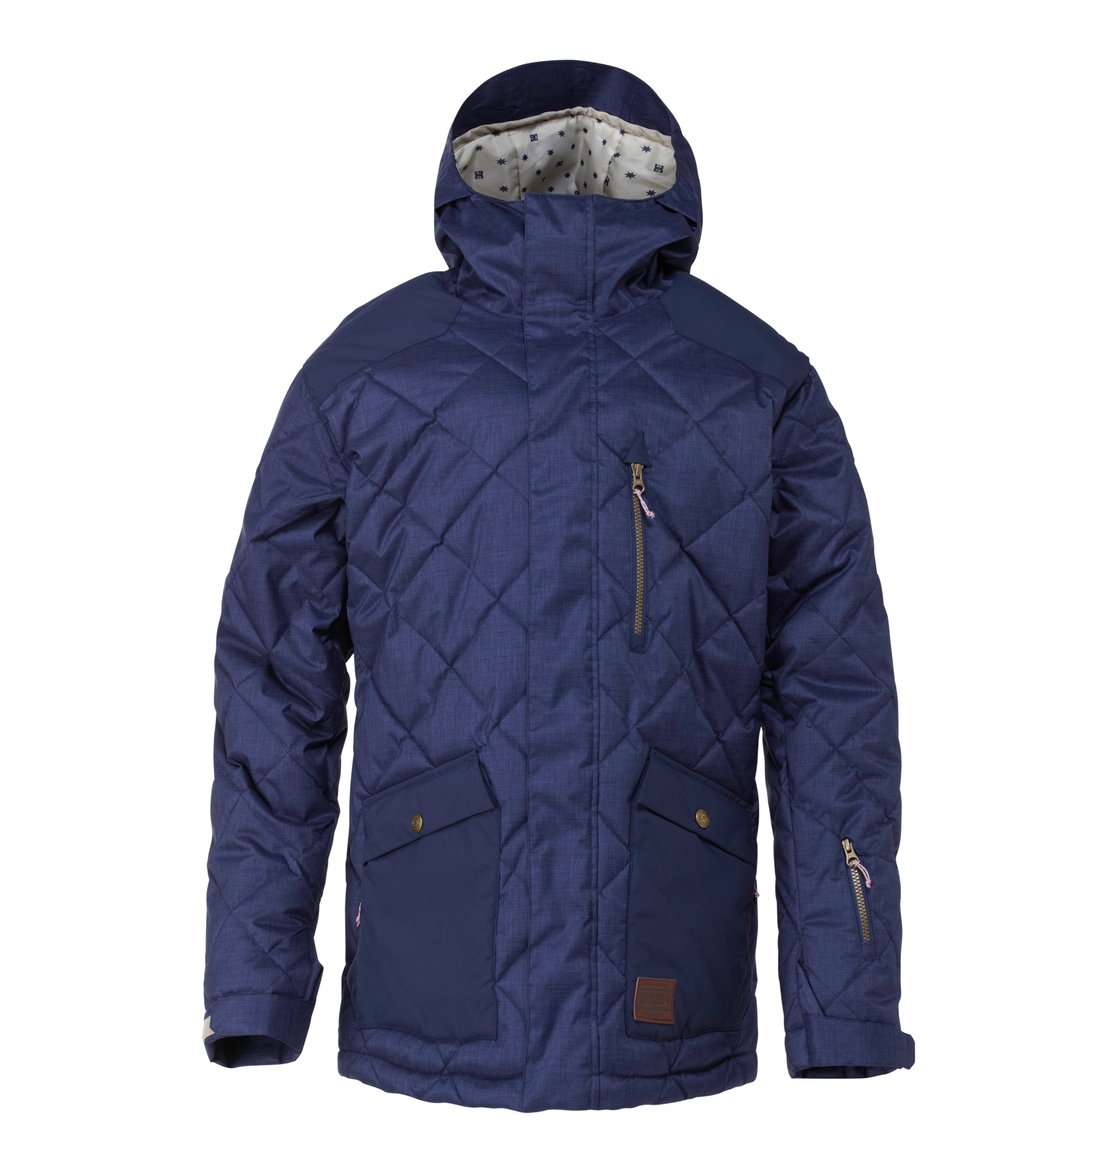 Men's Forest Snow Jacket EDYTJ00015 | DC Shoes